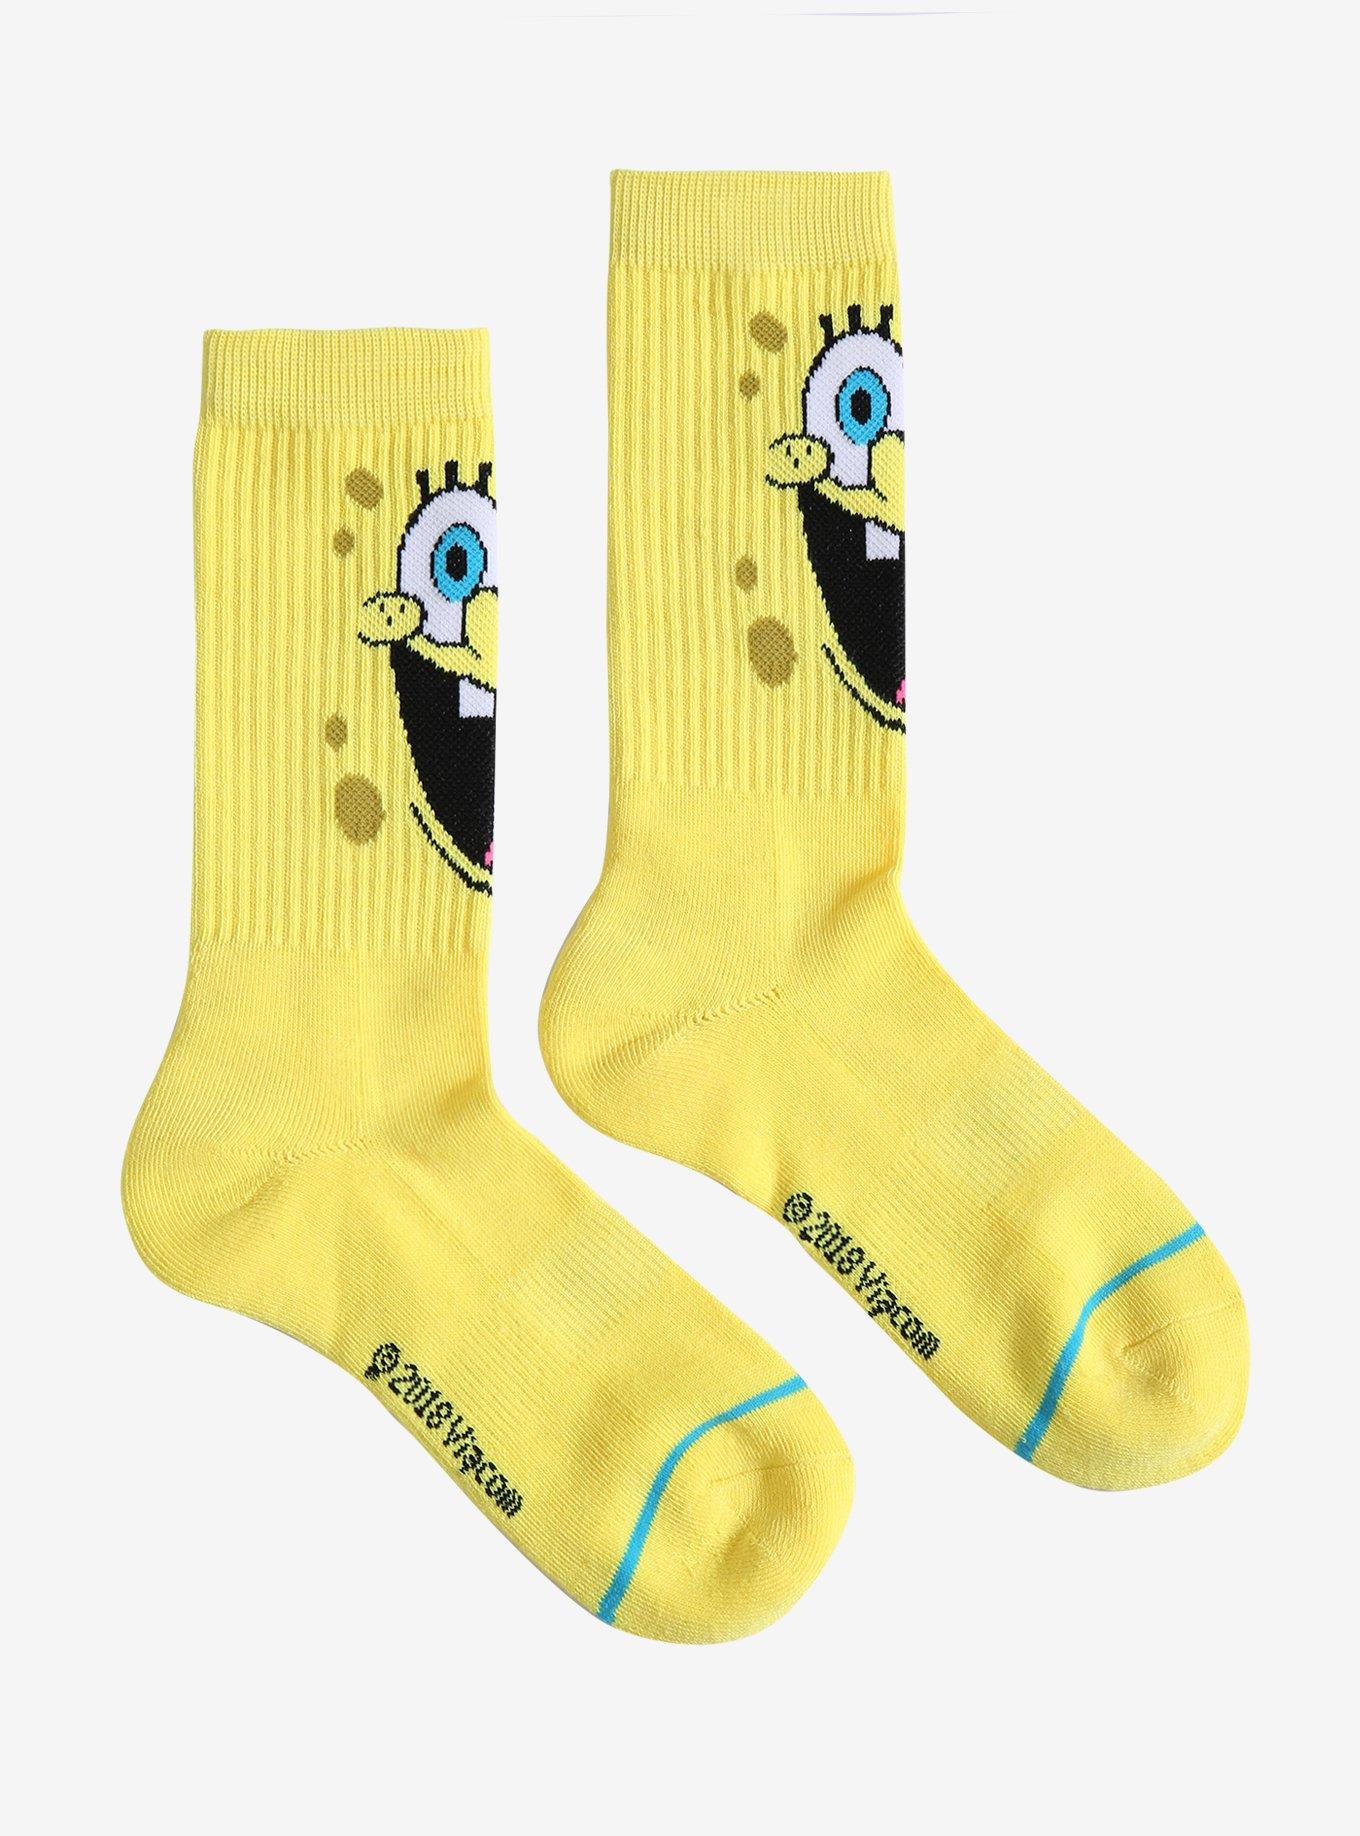 SpongeBob SquarePants Big Face Crew Socks, , hi-res